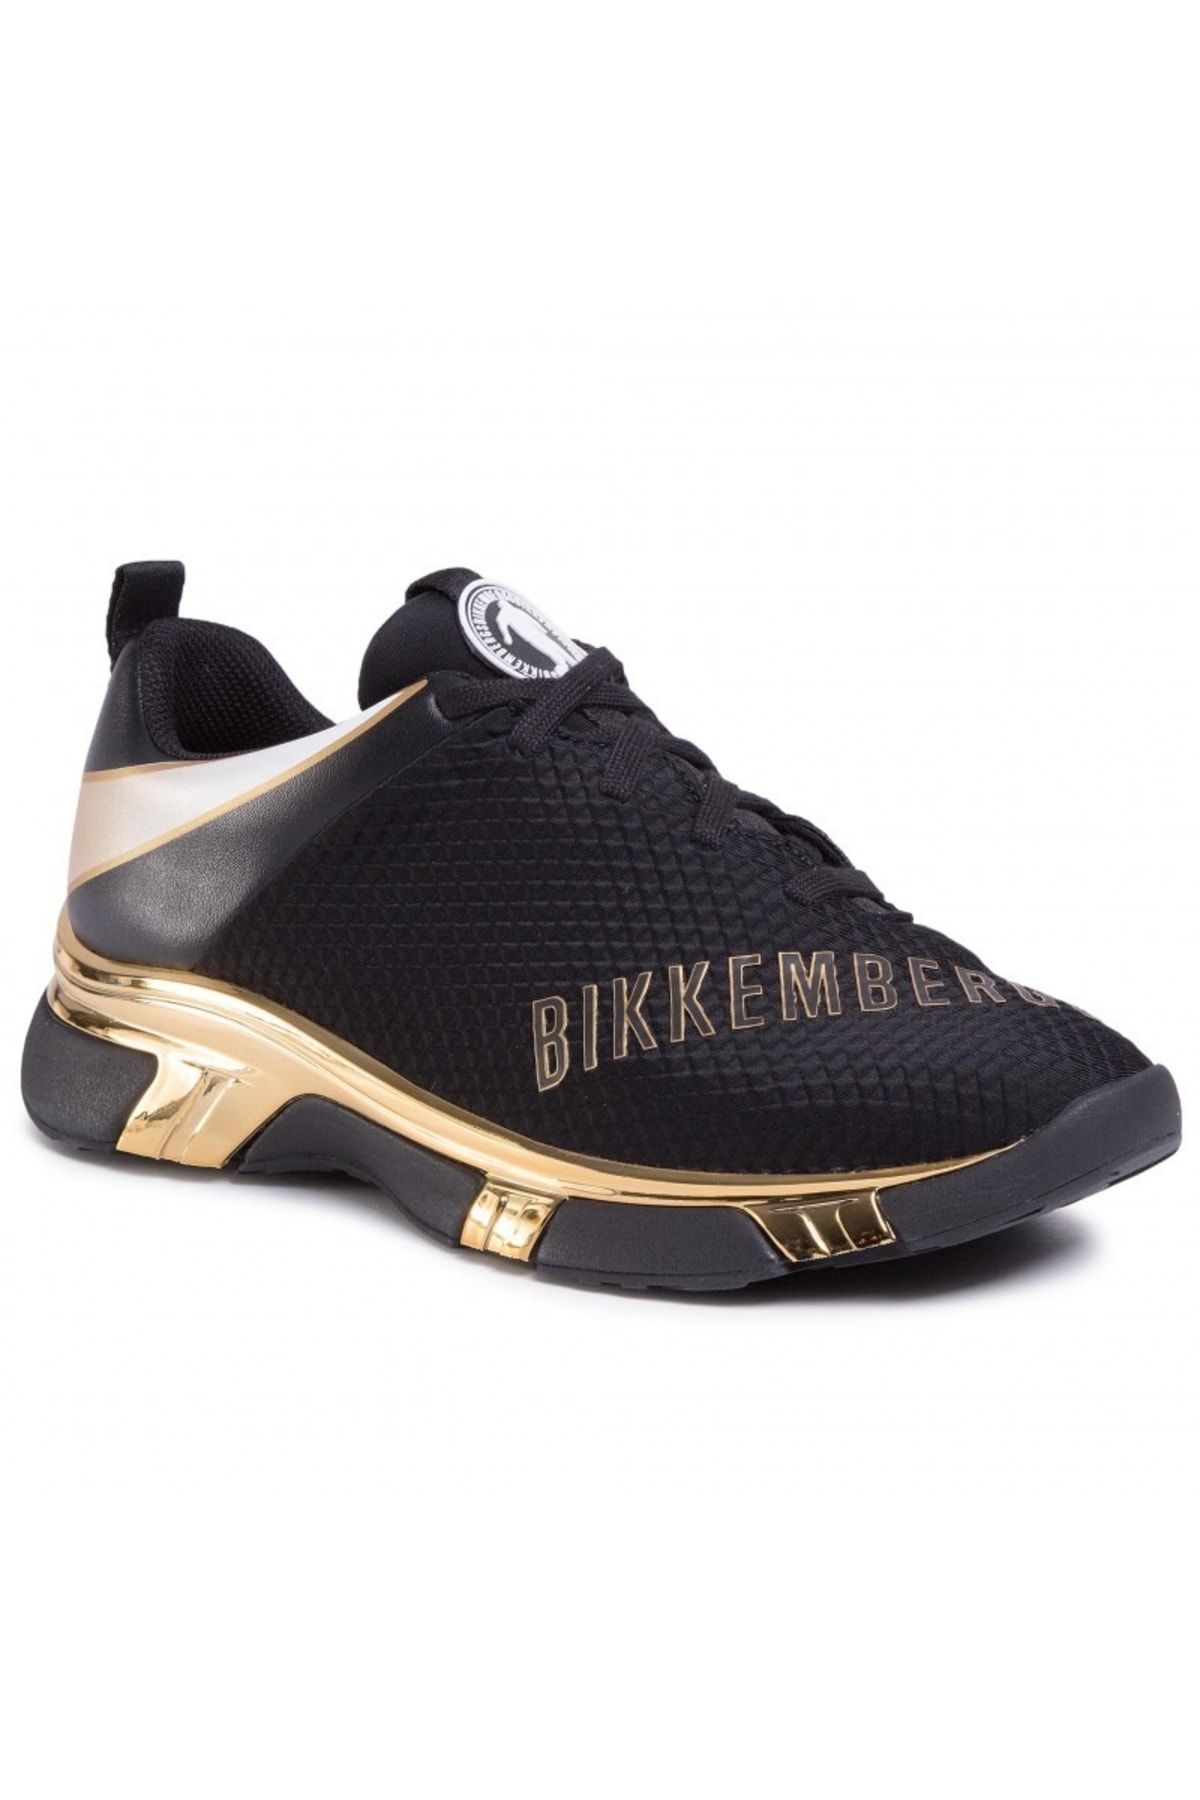 Bikkembergs Sneakers - Black - Flat - Trendyol